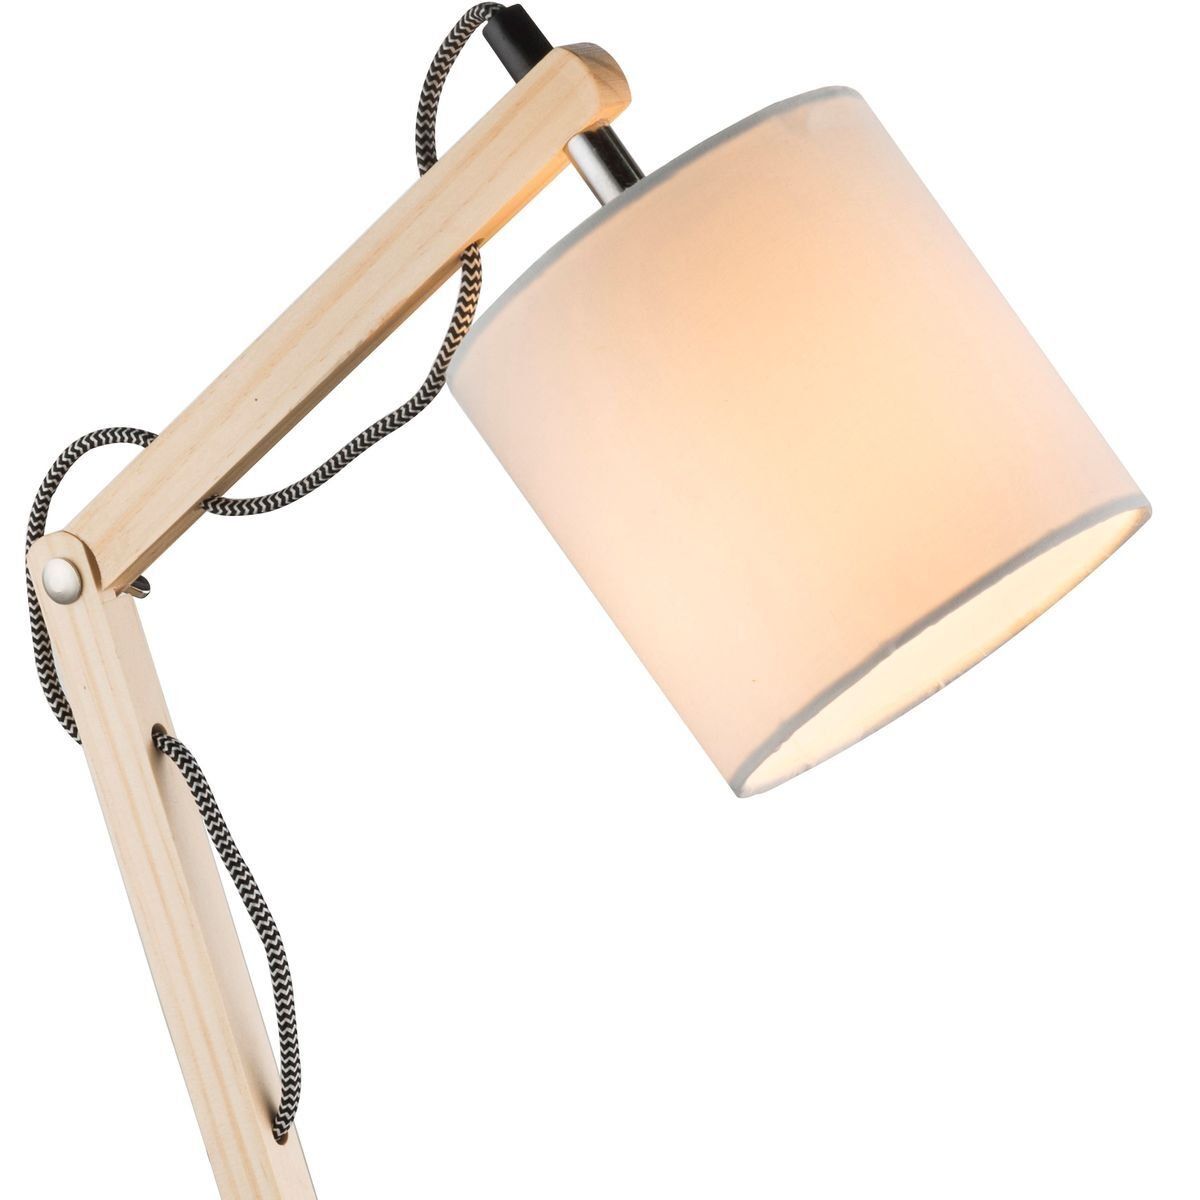 Lampe de bureau à led ajustable métal et bois (noir ou blanc